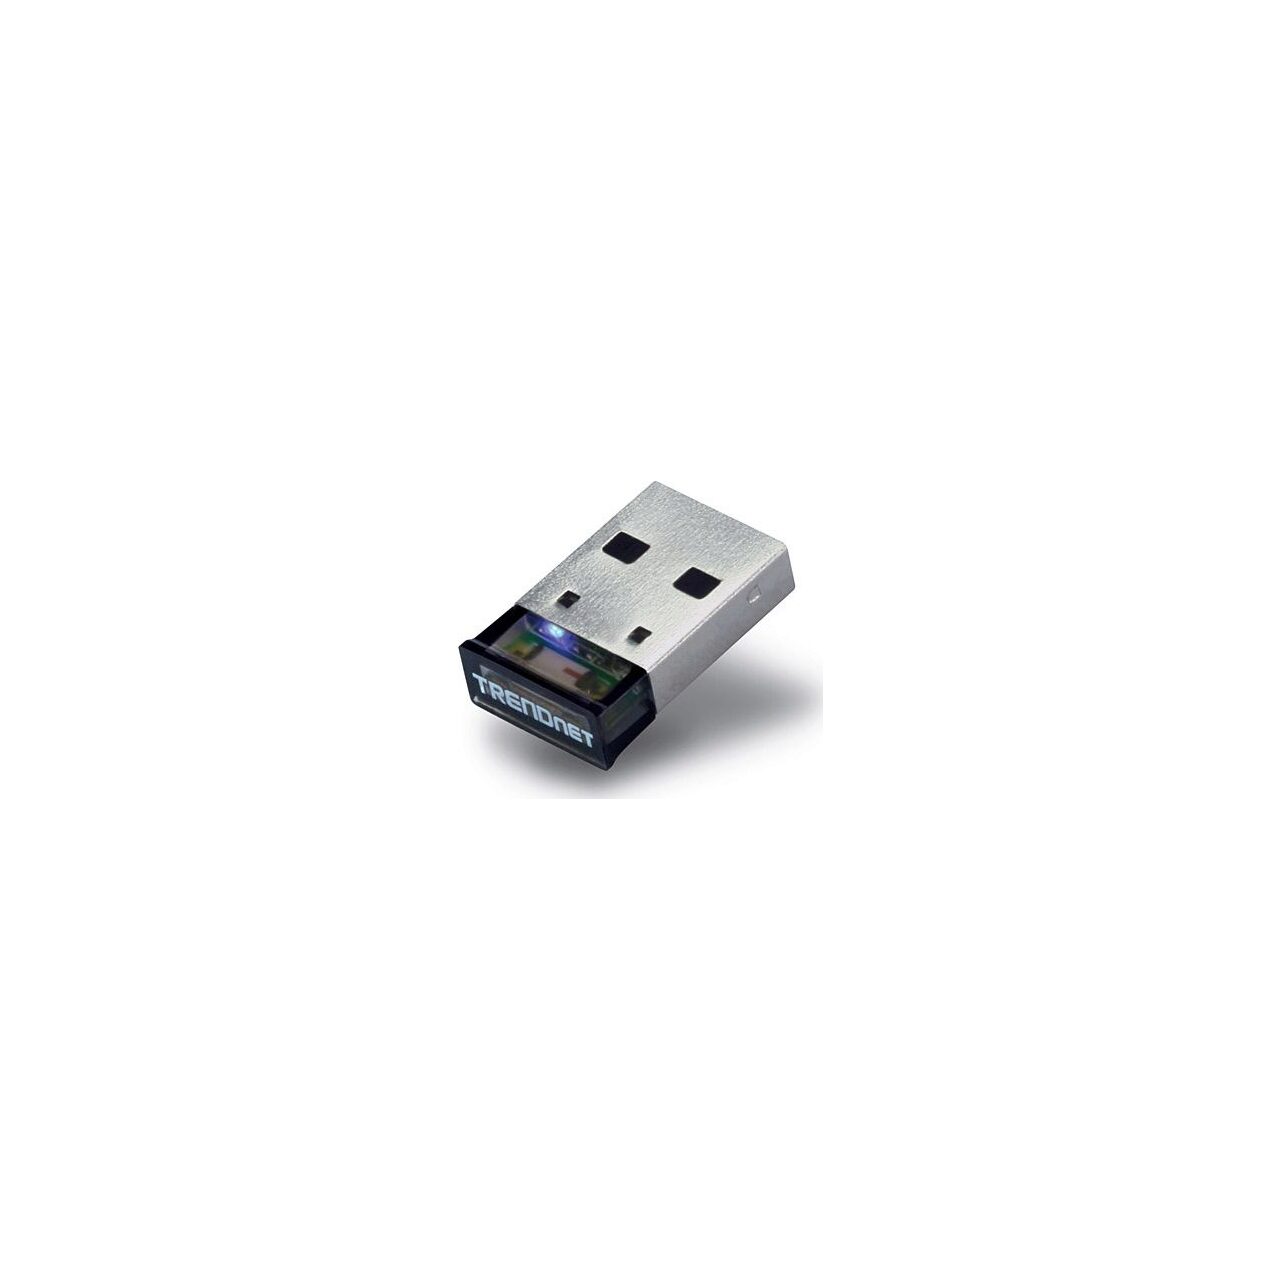 Adaptoare wireless - Adaptor USB Bluetooth TRENDnet Clasa I